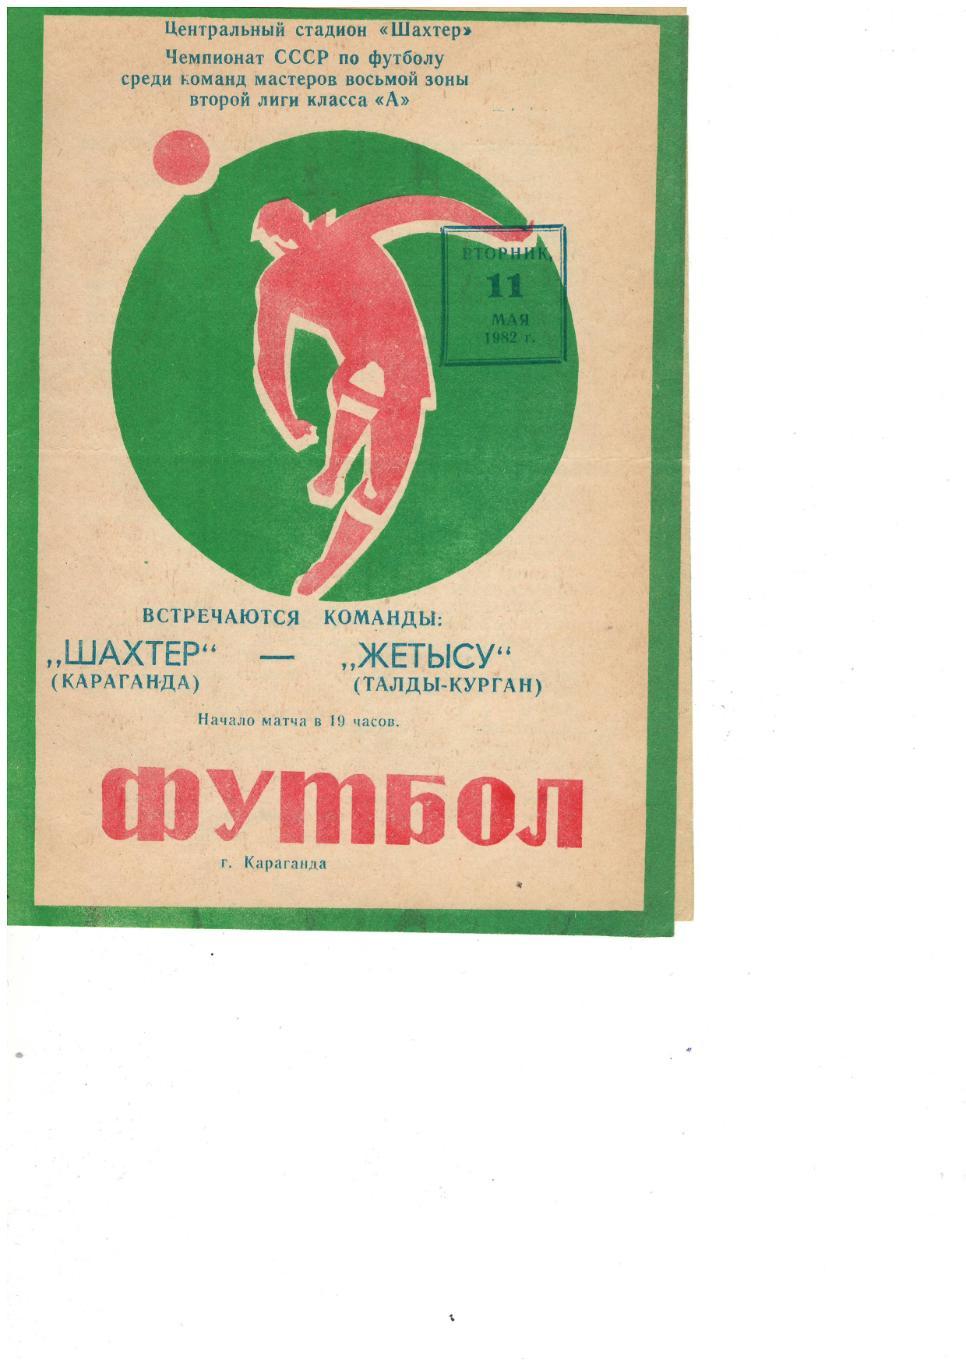 Шахтер Караганда - Жетысу Талды-Курган - 11.05.1982